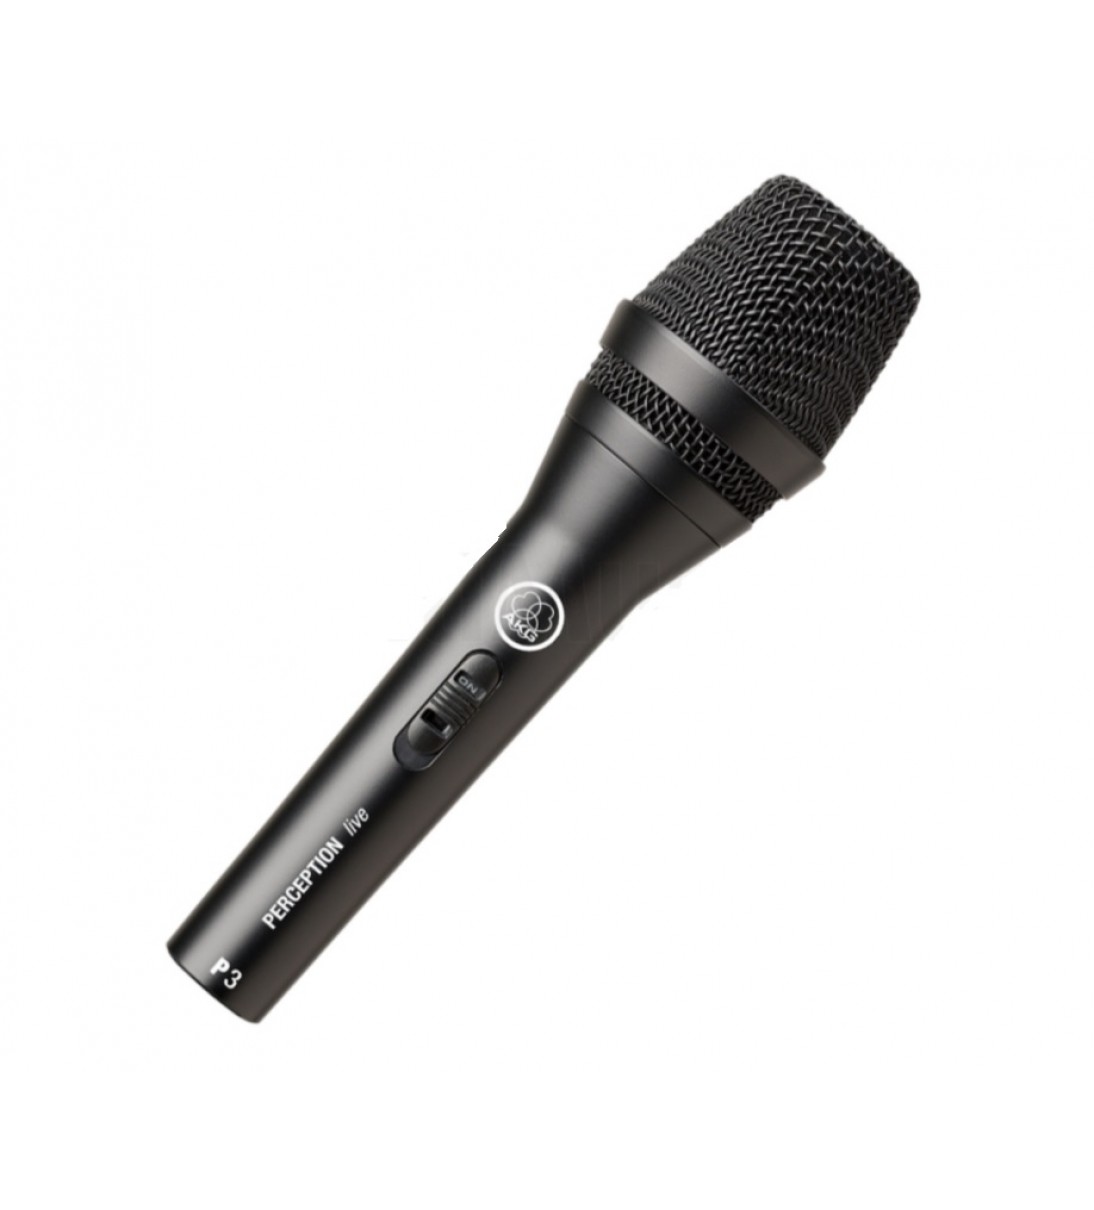 Microfono P3S microfono Dinamico Per Voce Con Switch On/off Perception p3 s è Un microfono Dinamico Ad Alte